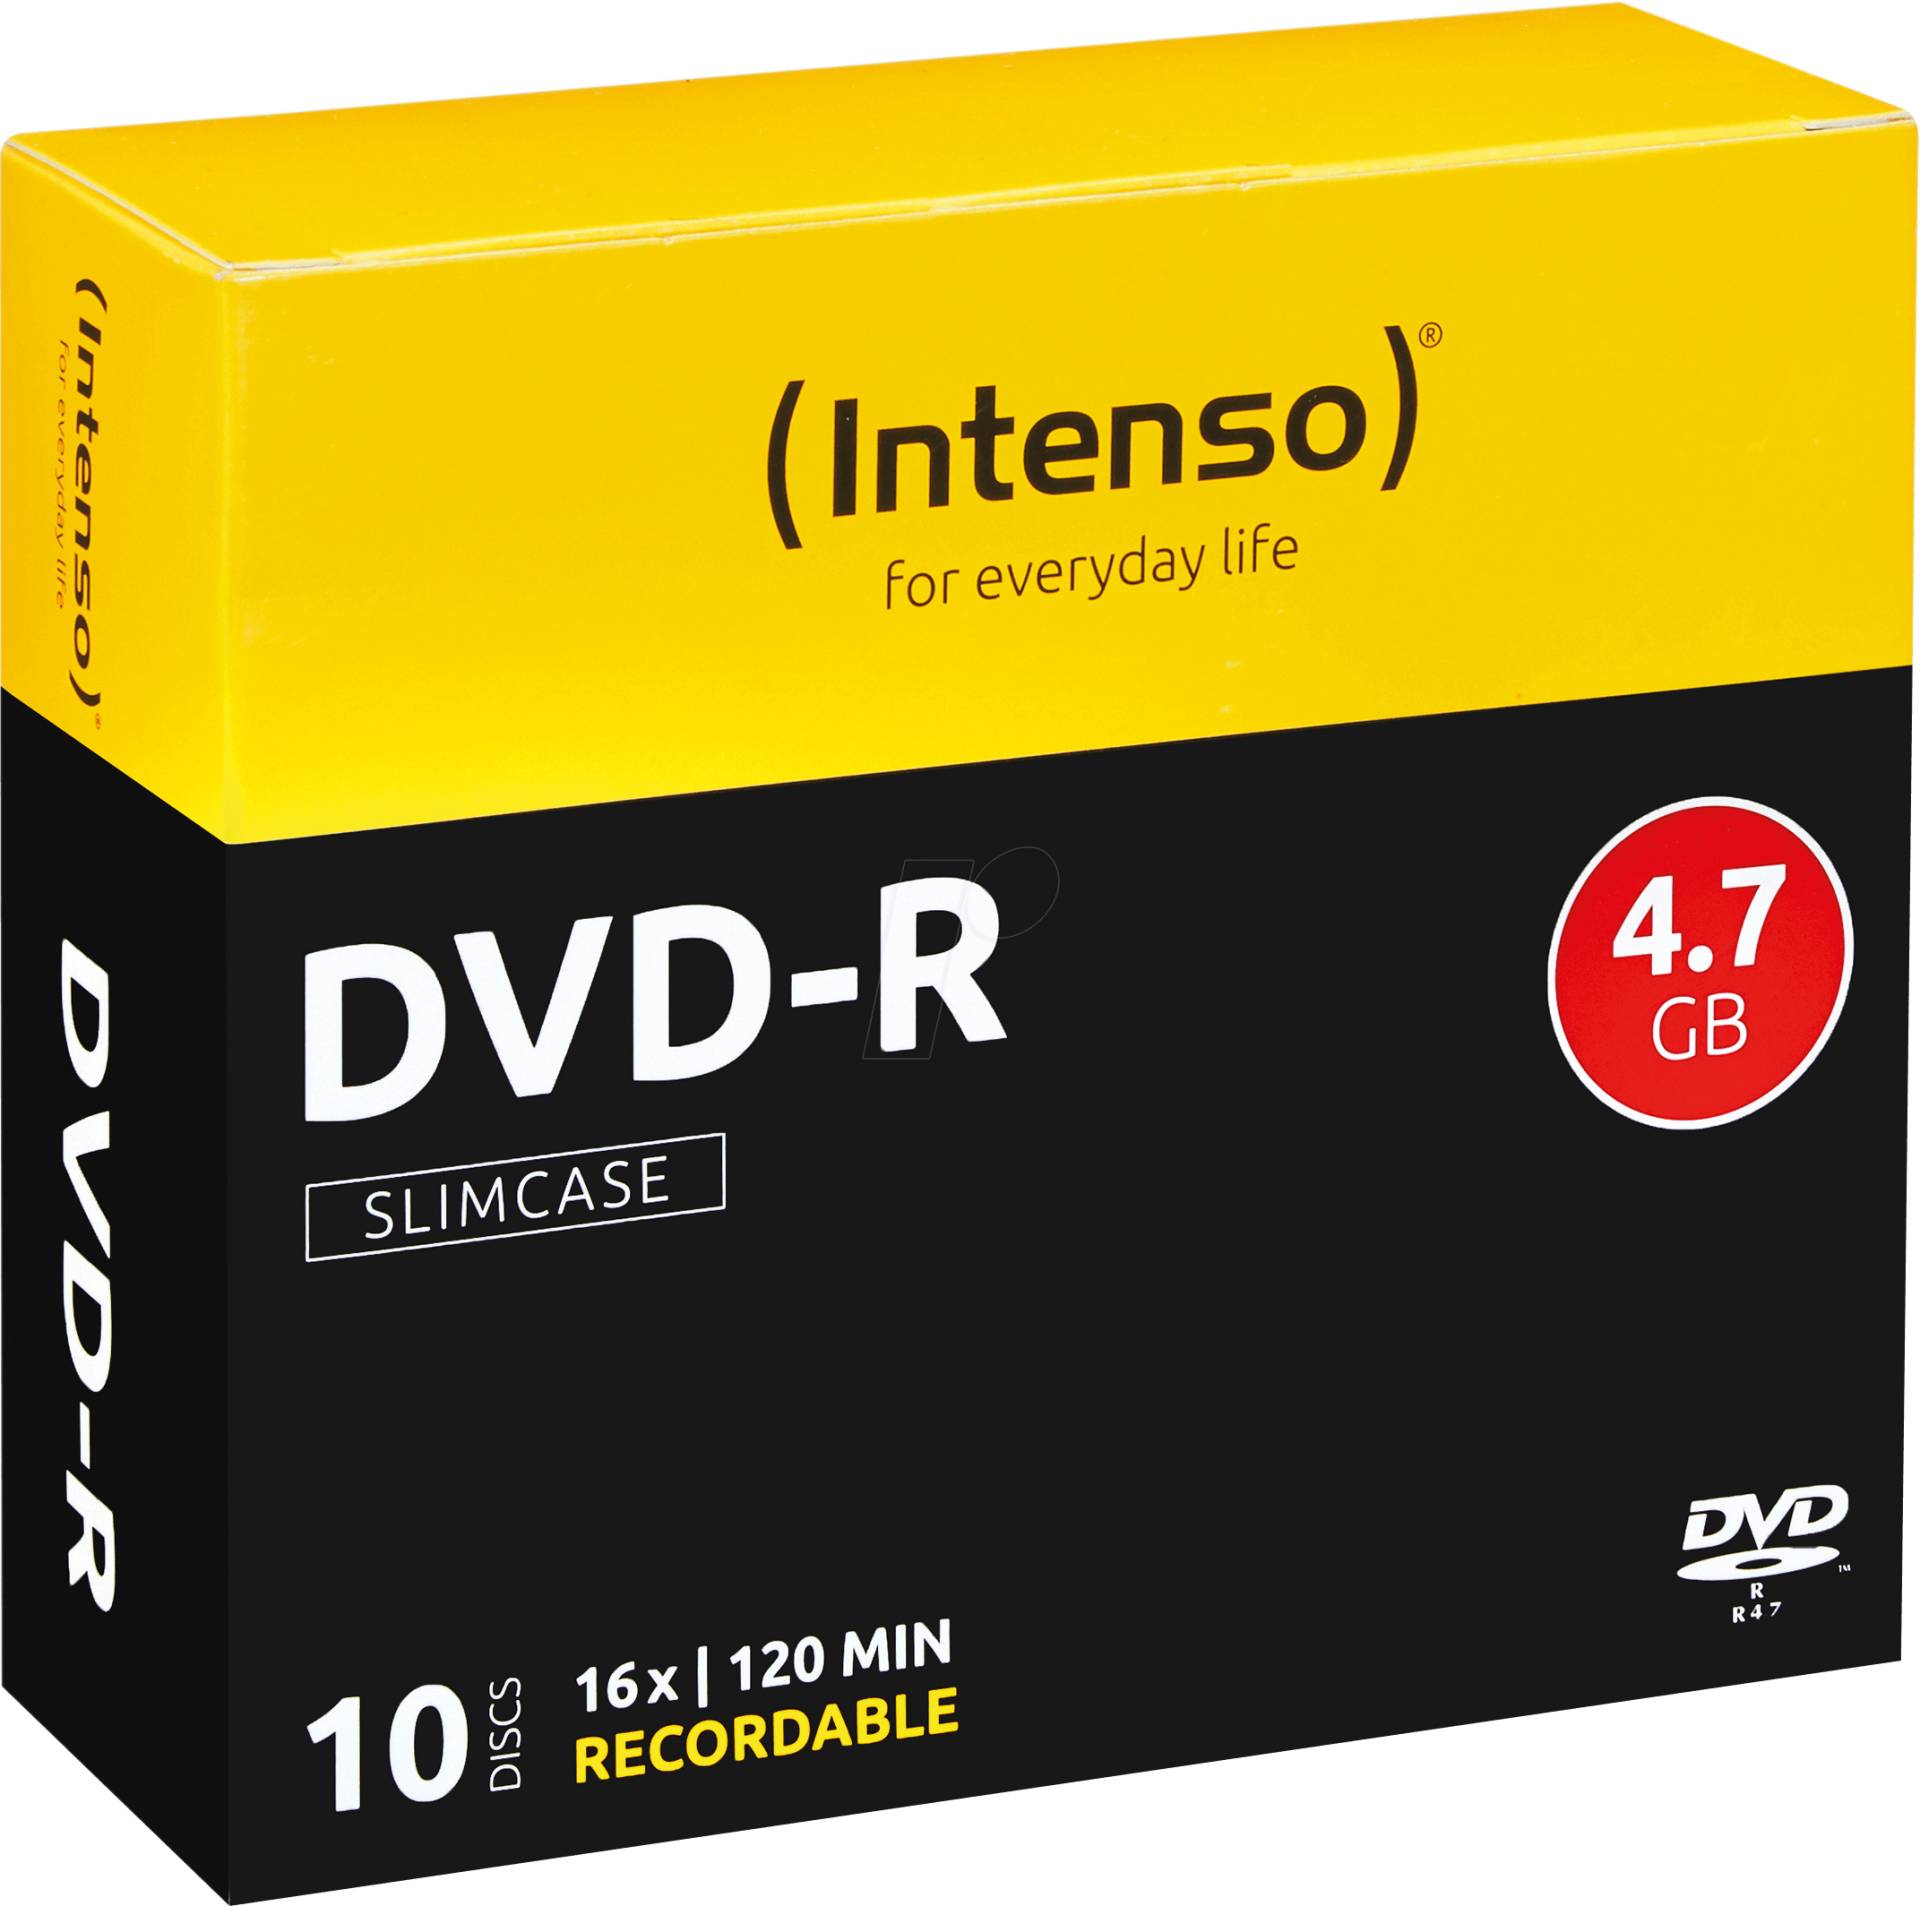 DVD-R4,7 INT10 - Intenso DVD-R 4,7GB, 10-er SlimCase von Intenso